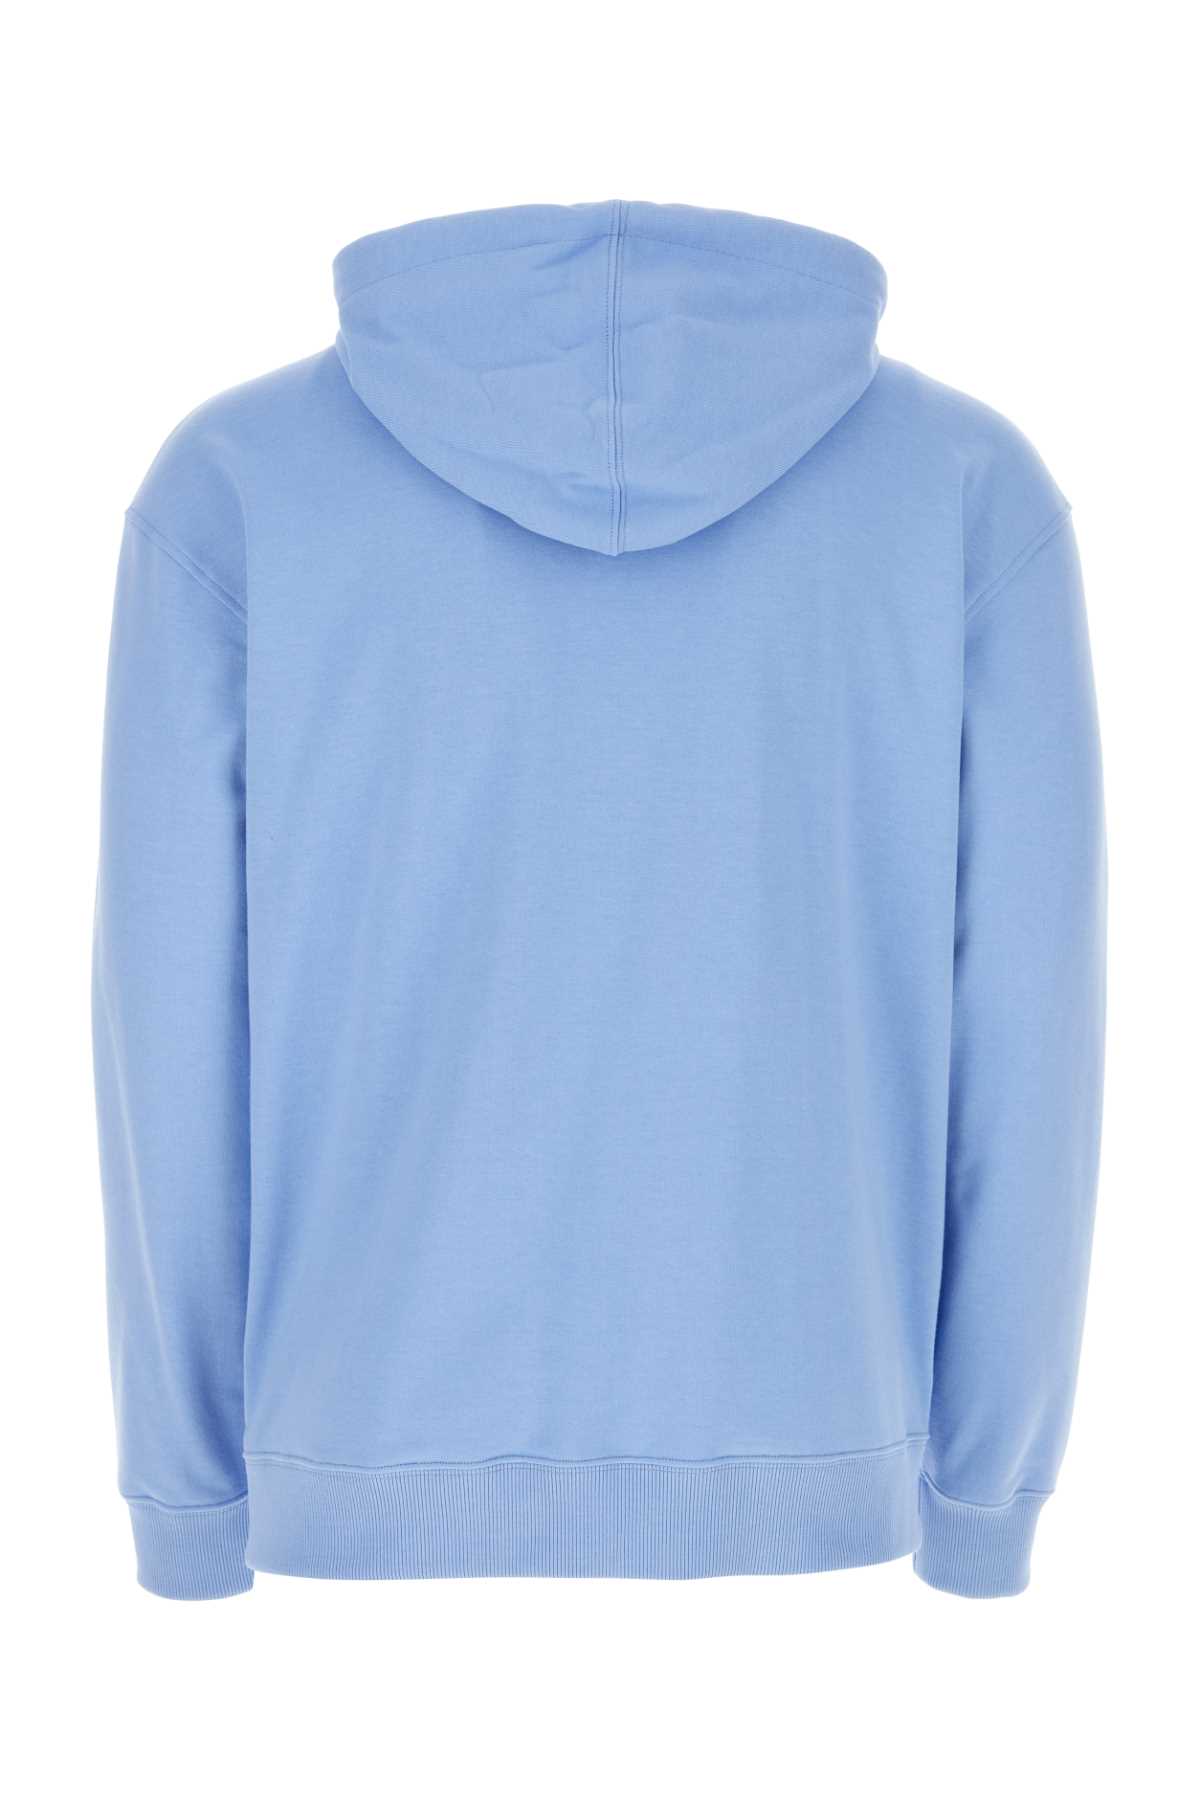 Fendi Light-blue Cotton Sweatshirt In F0ty2